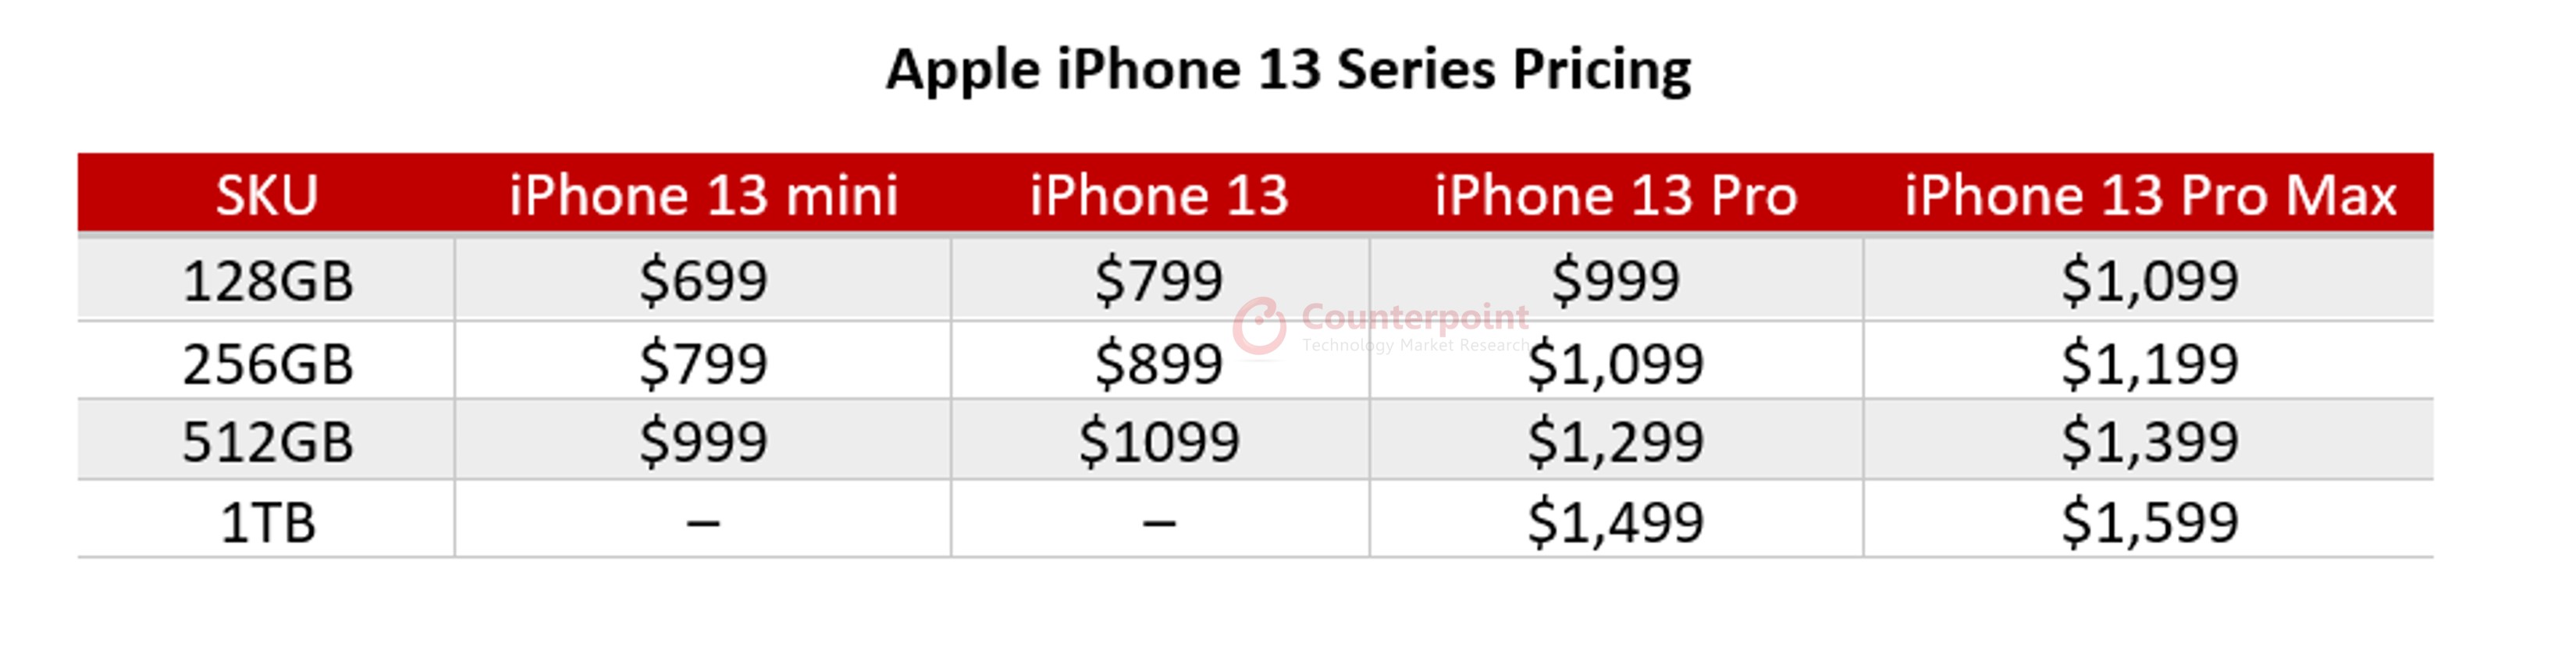 与iPhone 13的定价相对应